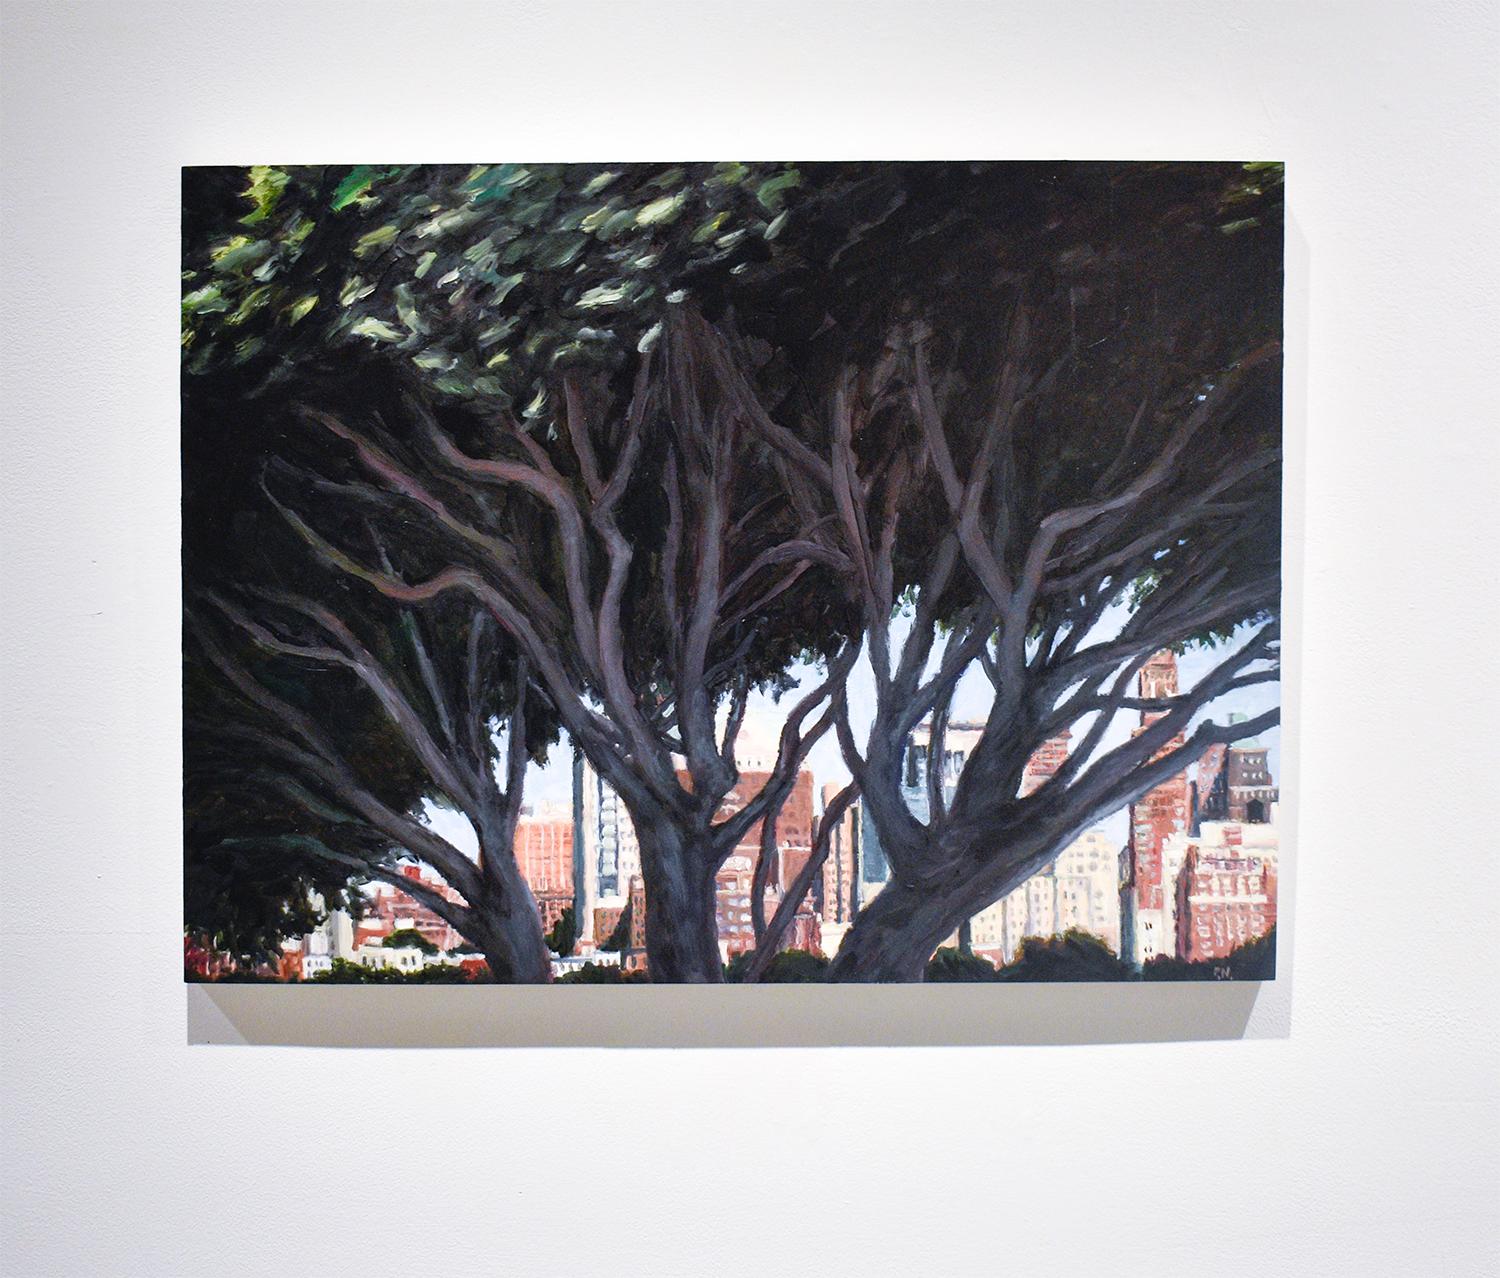 Brooklyn Through the Trees: Modernes, realistisches Landschaftsgemälde von New York City – Painting von Patty Neal